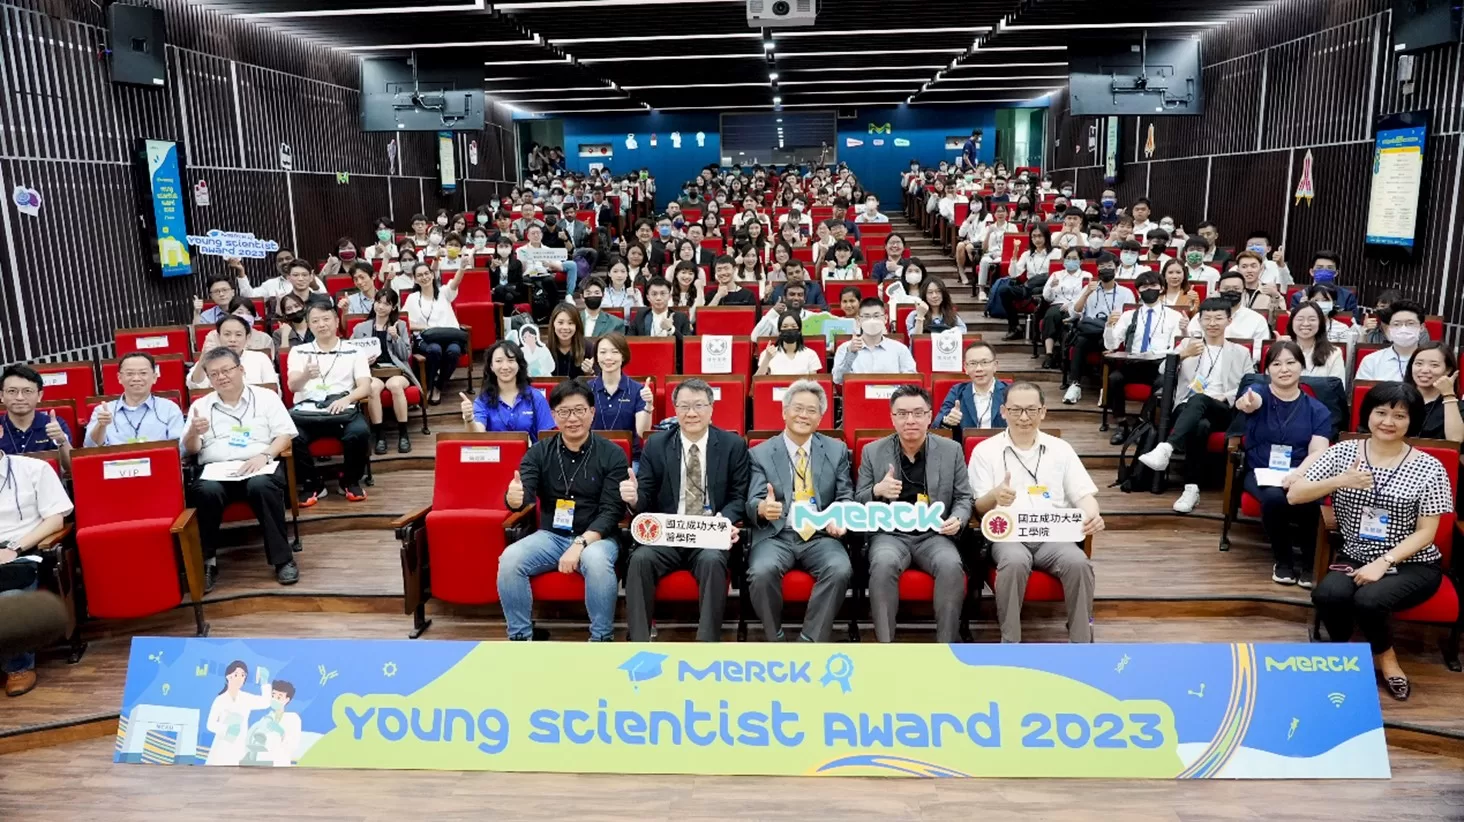 第二屆默克年輕科學人獎出爐 培育新世代科學新星